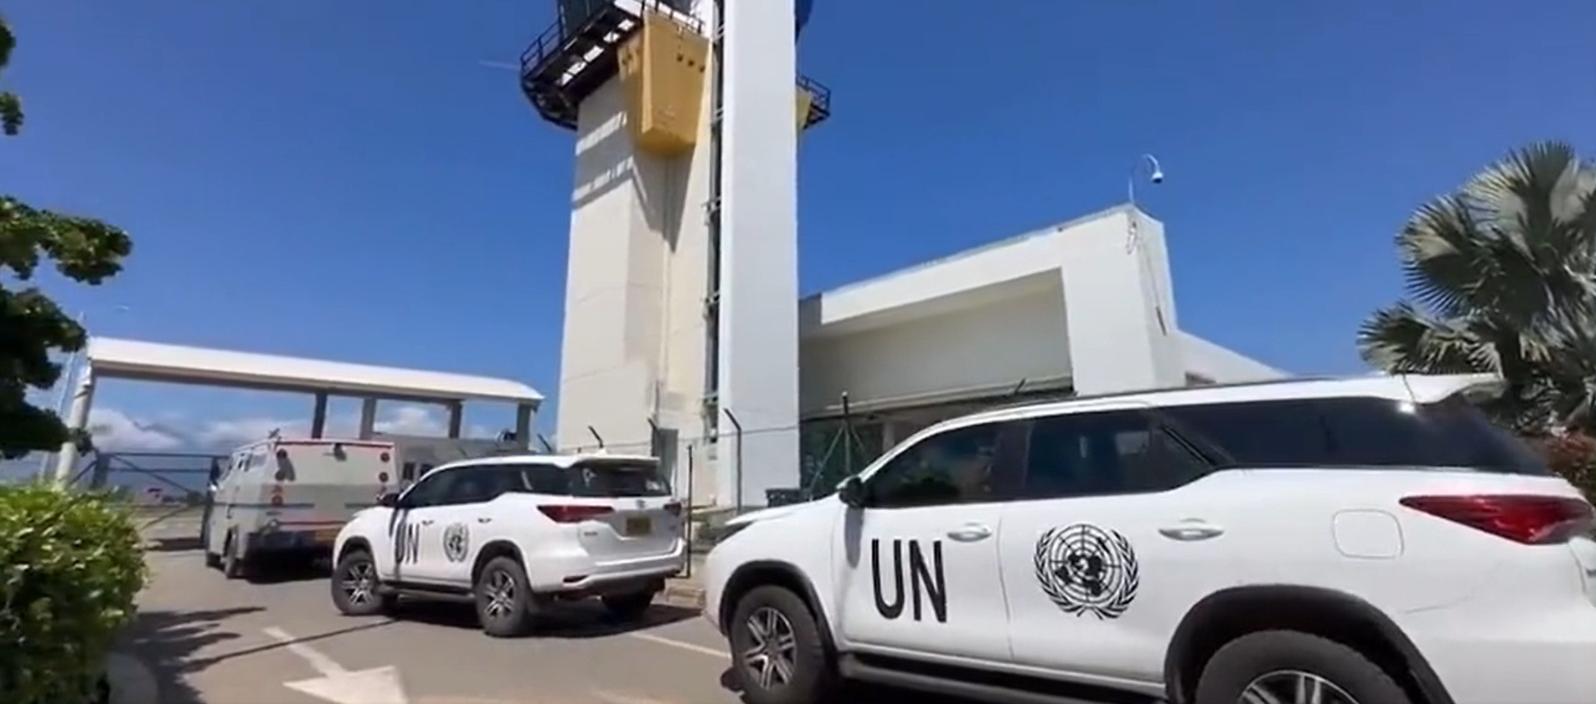 El camión de valores que aparece junto a las dos camionetas de la ONU.